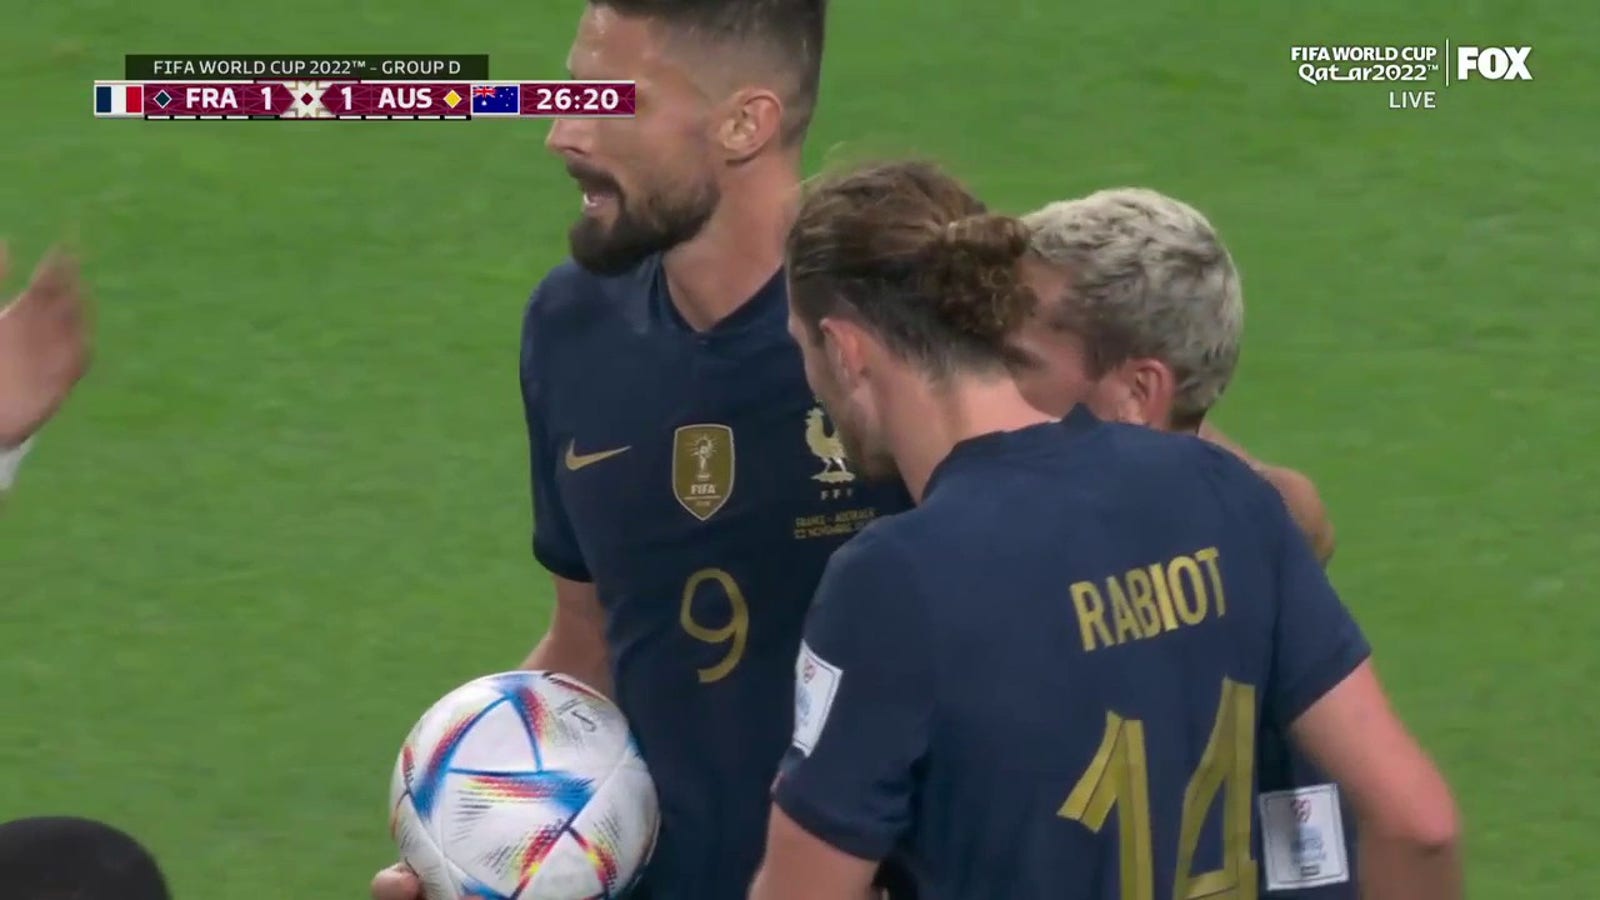 France's Adrien Rabiot scores goal vs. Australia in 27' 